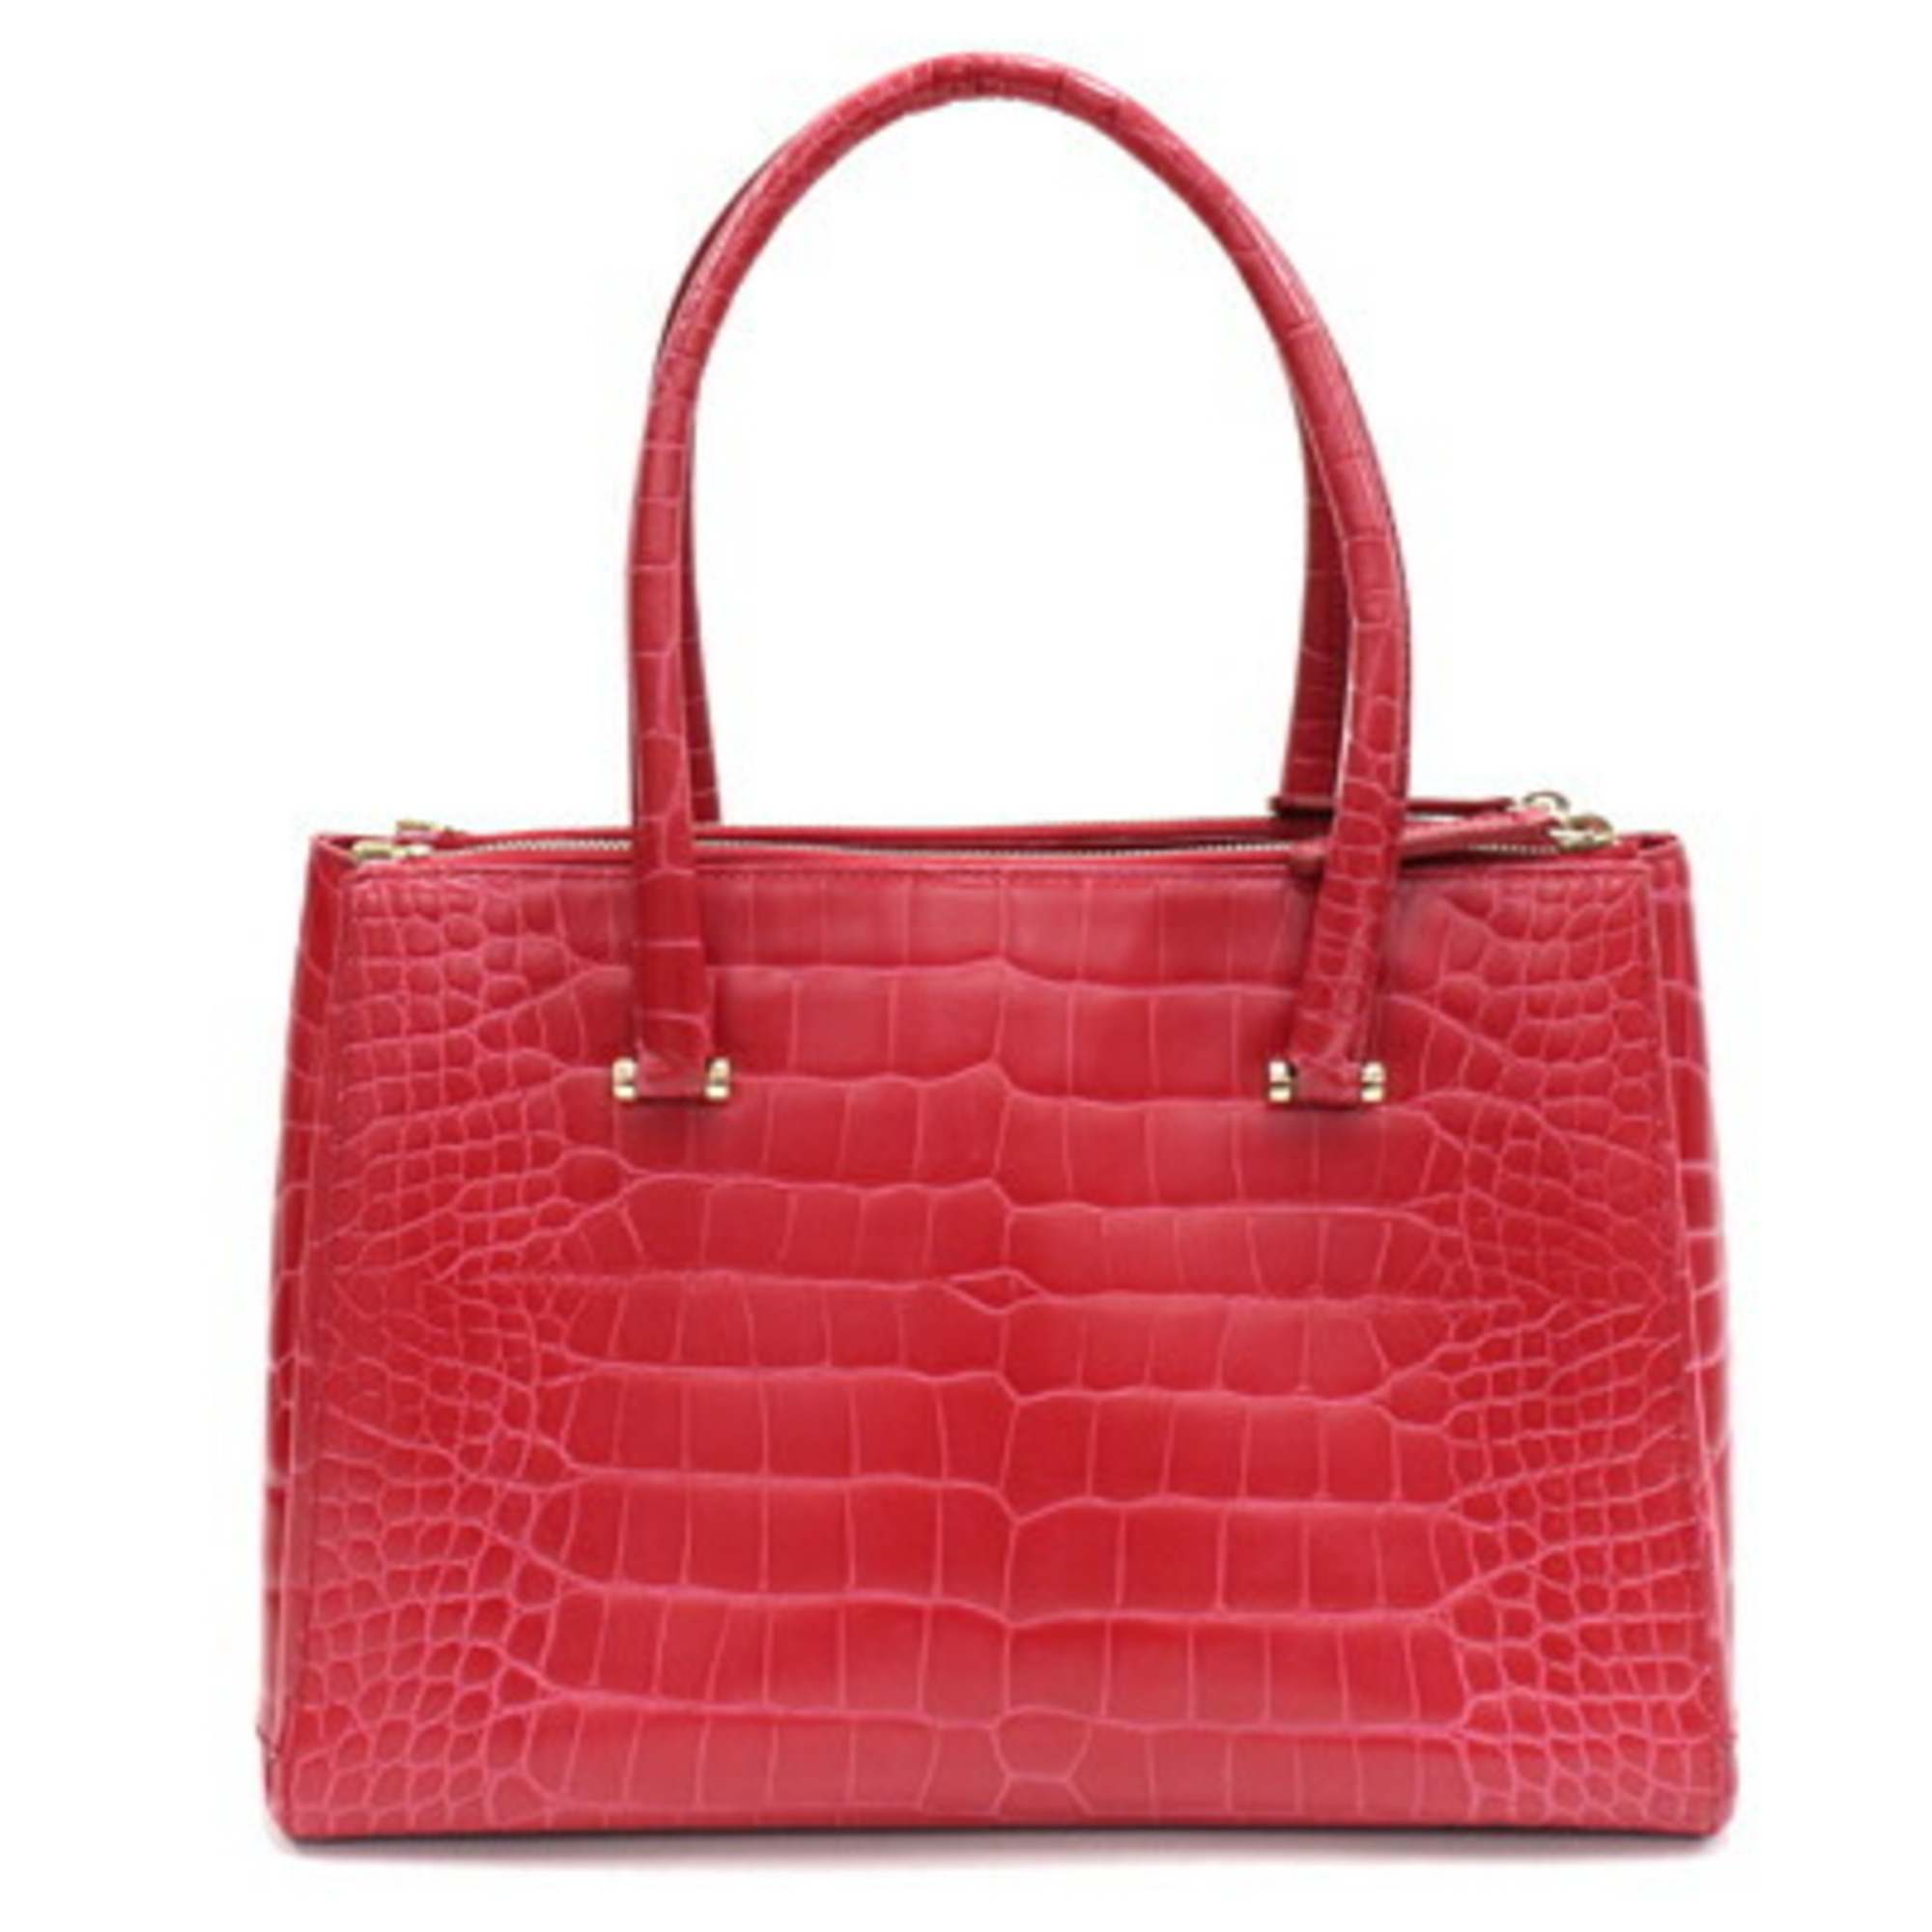 FURLA Handbag F6435 Red Tote Bag Women's